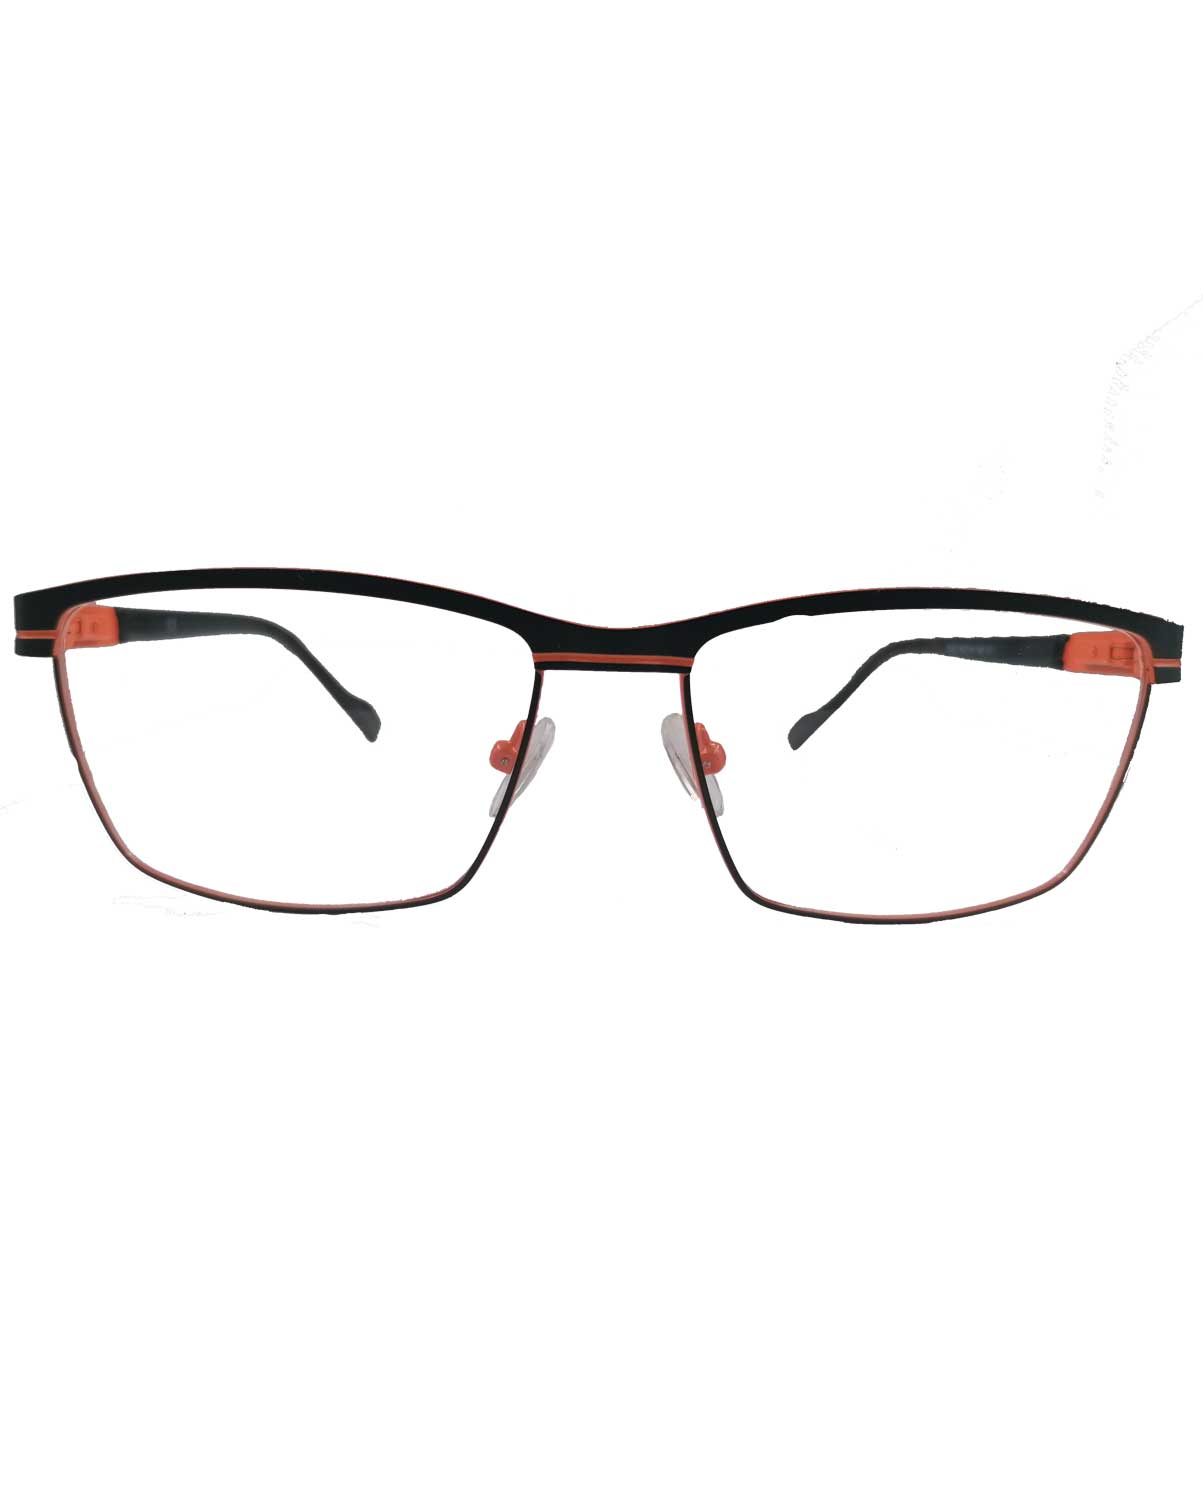 Zaštitne naočare Spawn C1B - crno-narandžaste 